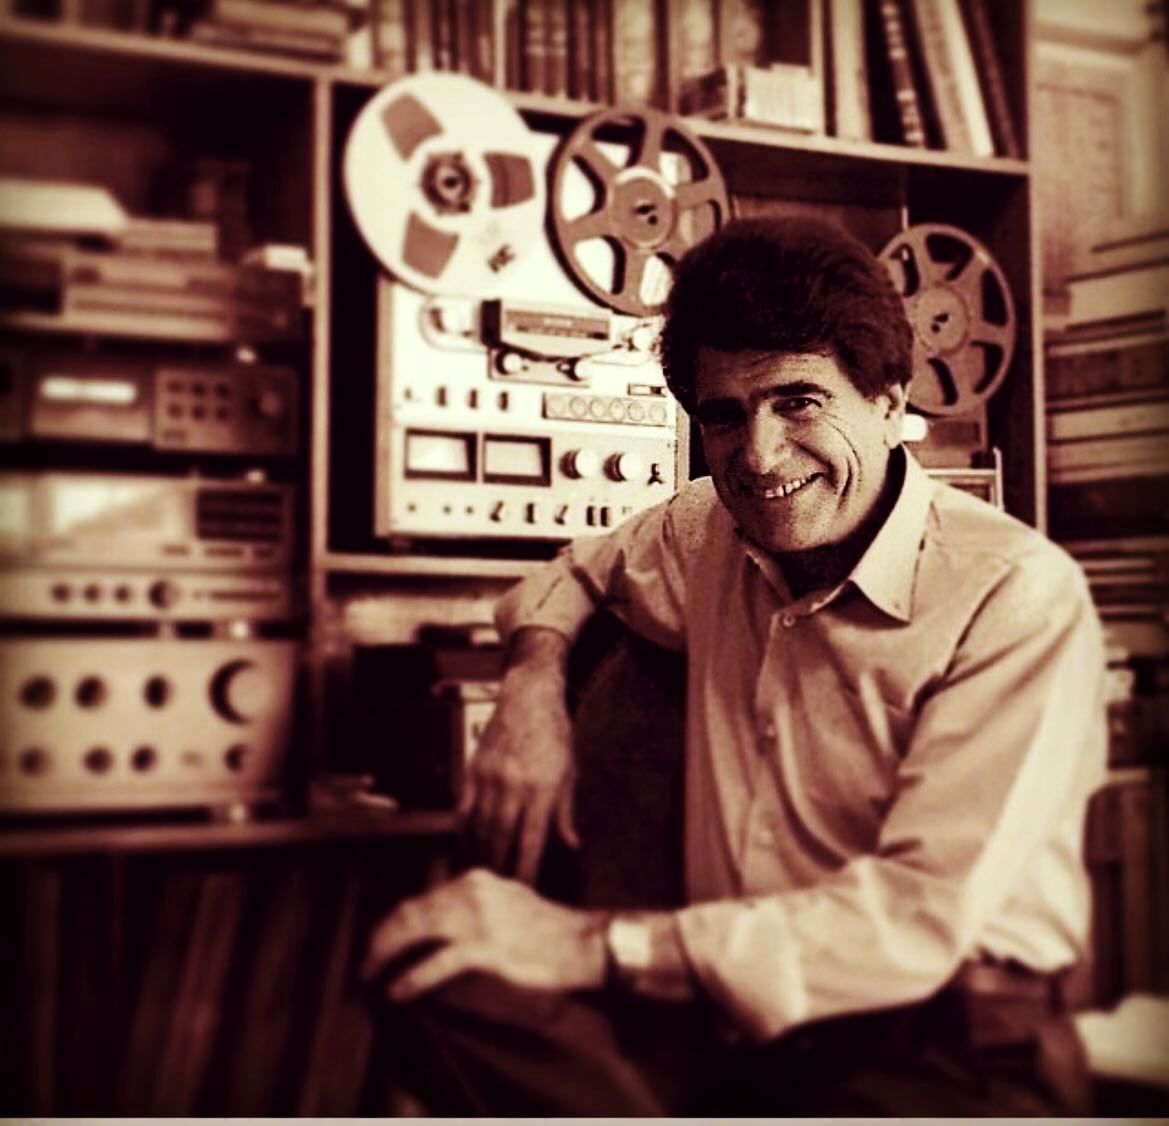 همایون شجریان پسر استاد بزرگ موسیقی ایران یک پست احساسی را برای پدرش محمدرضا شجریان منتشر کرد که اشک همه را درآورد.